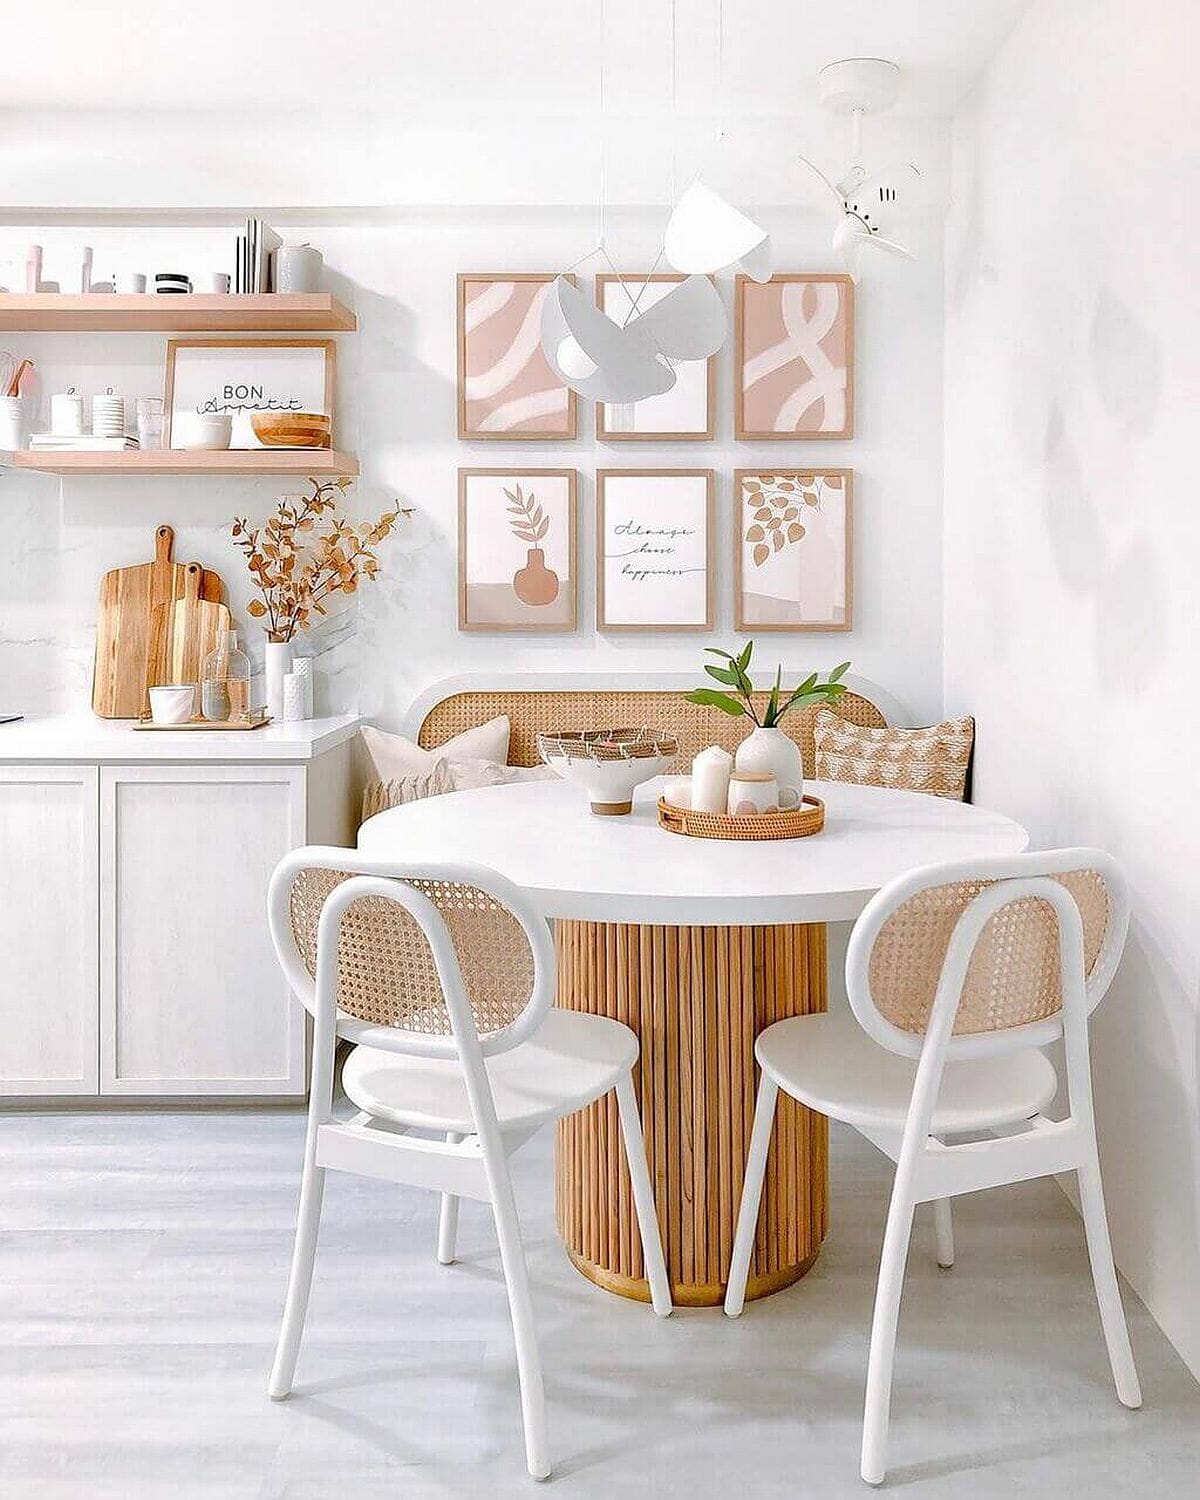 Nội thất gỗ, tông màu trắng kết hợp hài hòa tạo nên phòng ăn đẹp như tranh vẽ.